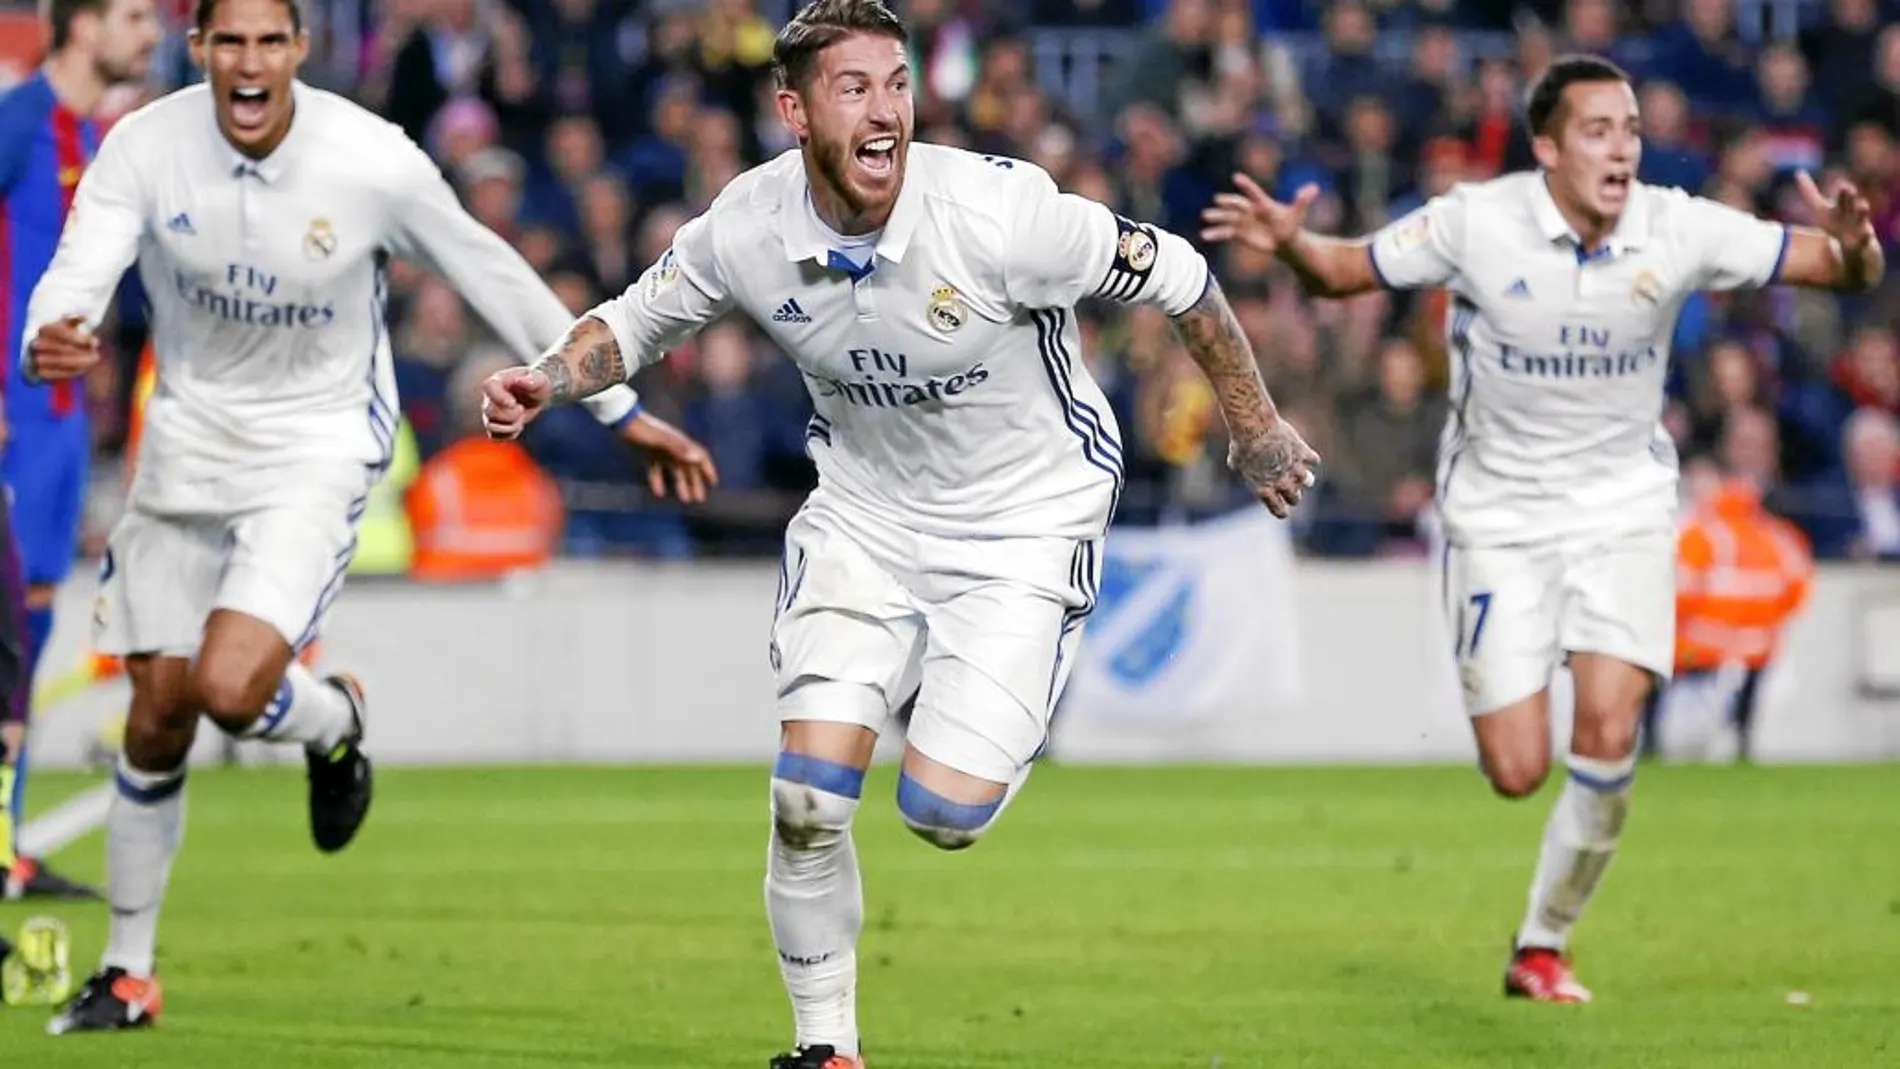 La imagen de Ramos marcando y celebrando eufórico un gol en los últimos minutos ya es un clásico